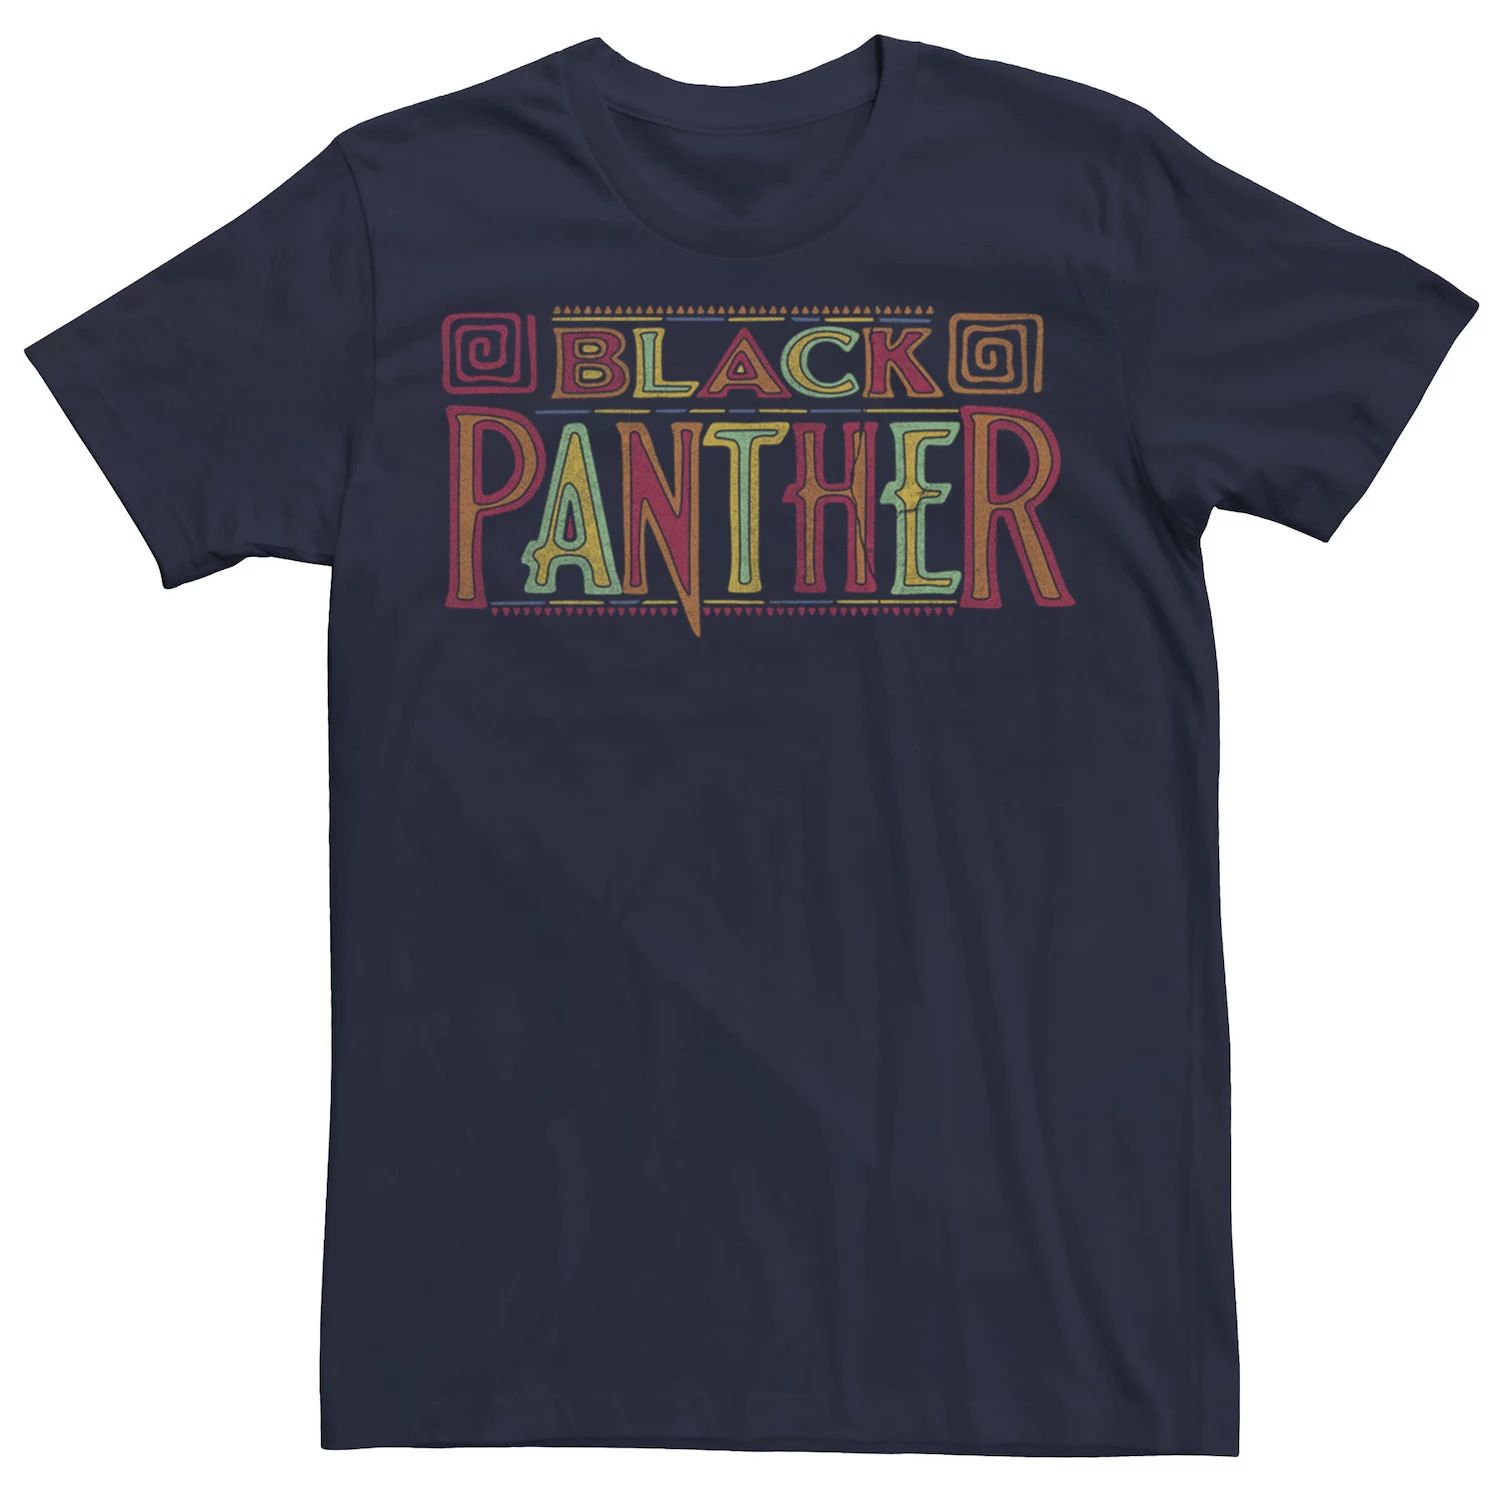 Мужская футболка с графическим логотипом и рисунком фильма «Черная пантера» Marvel